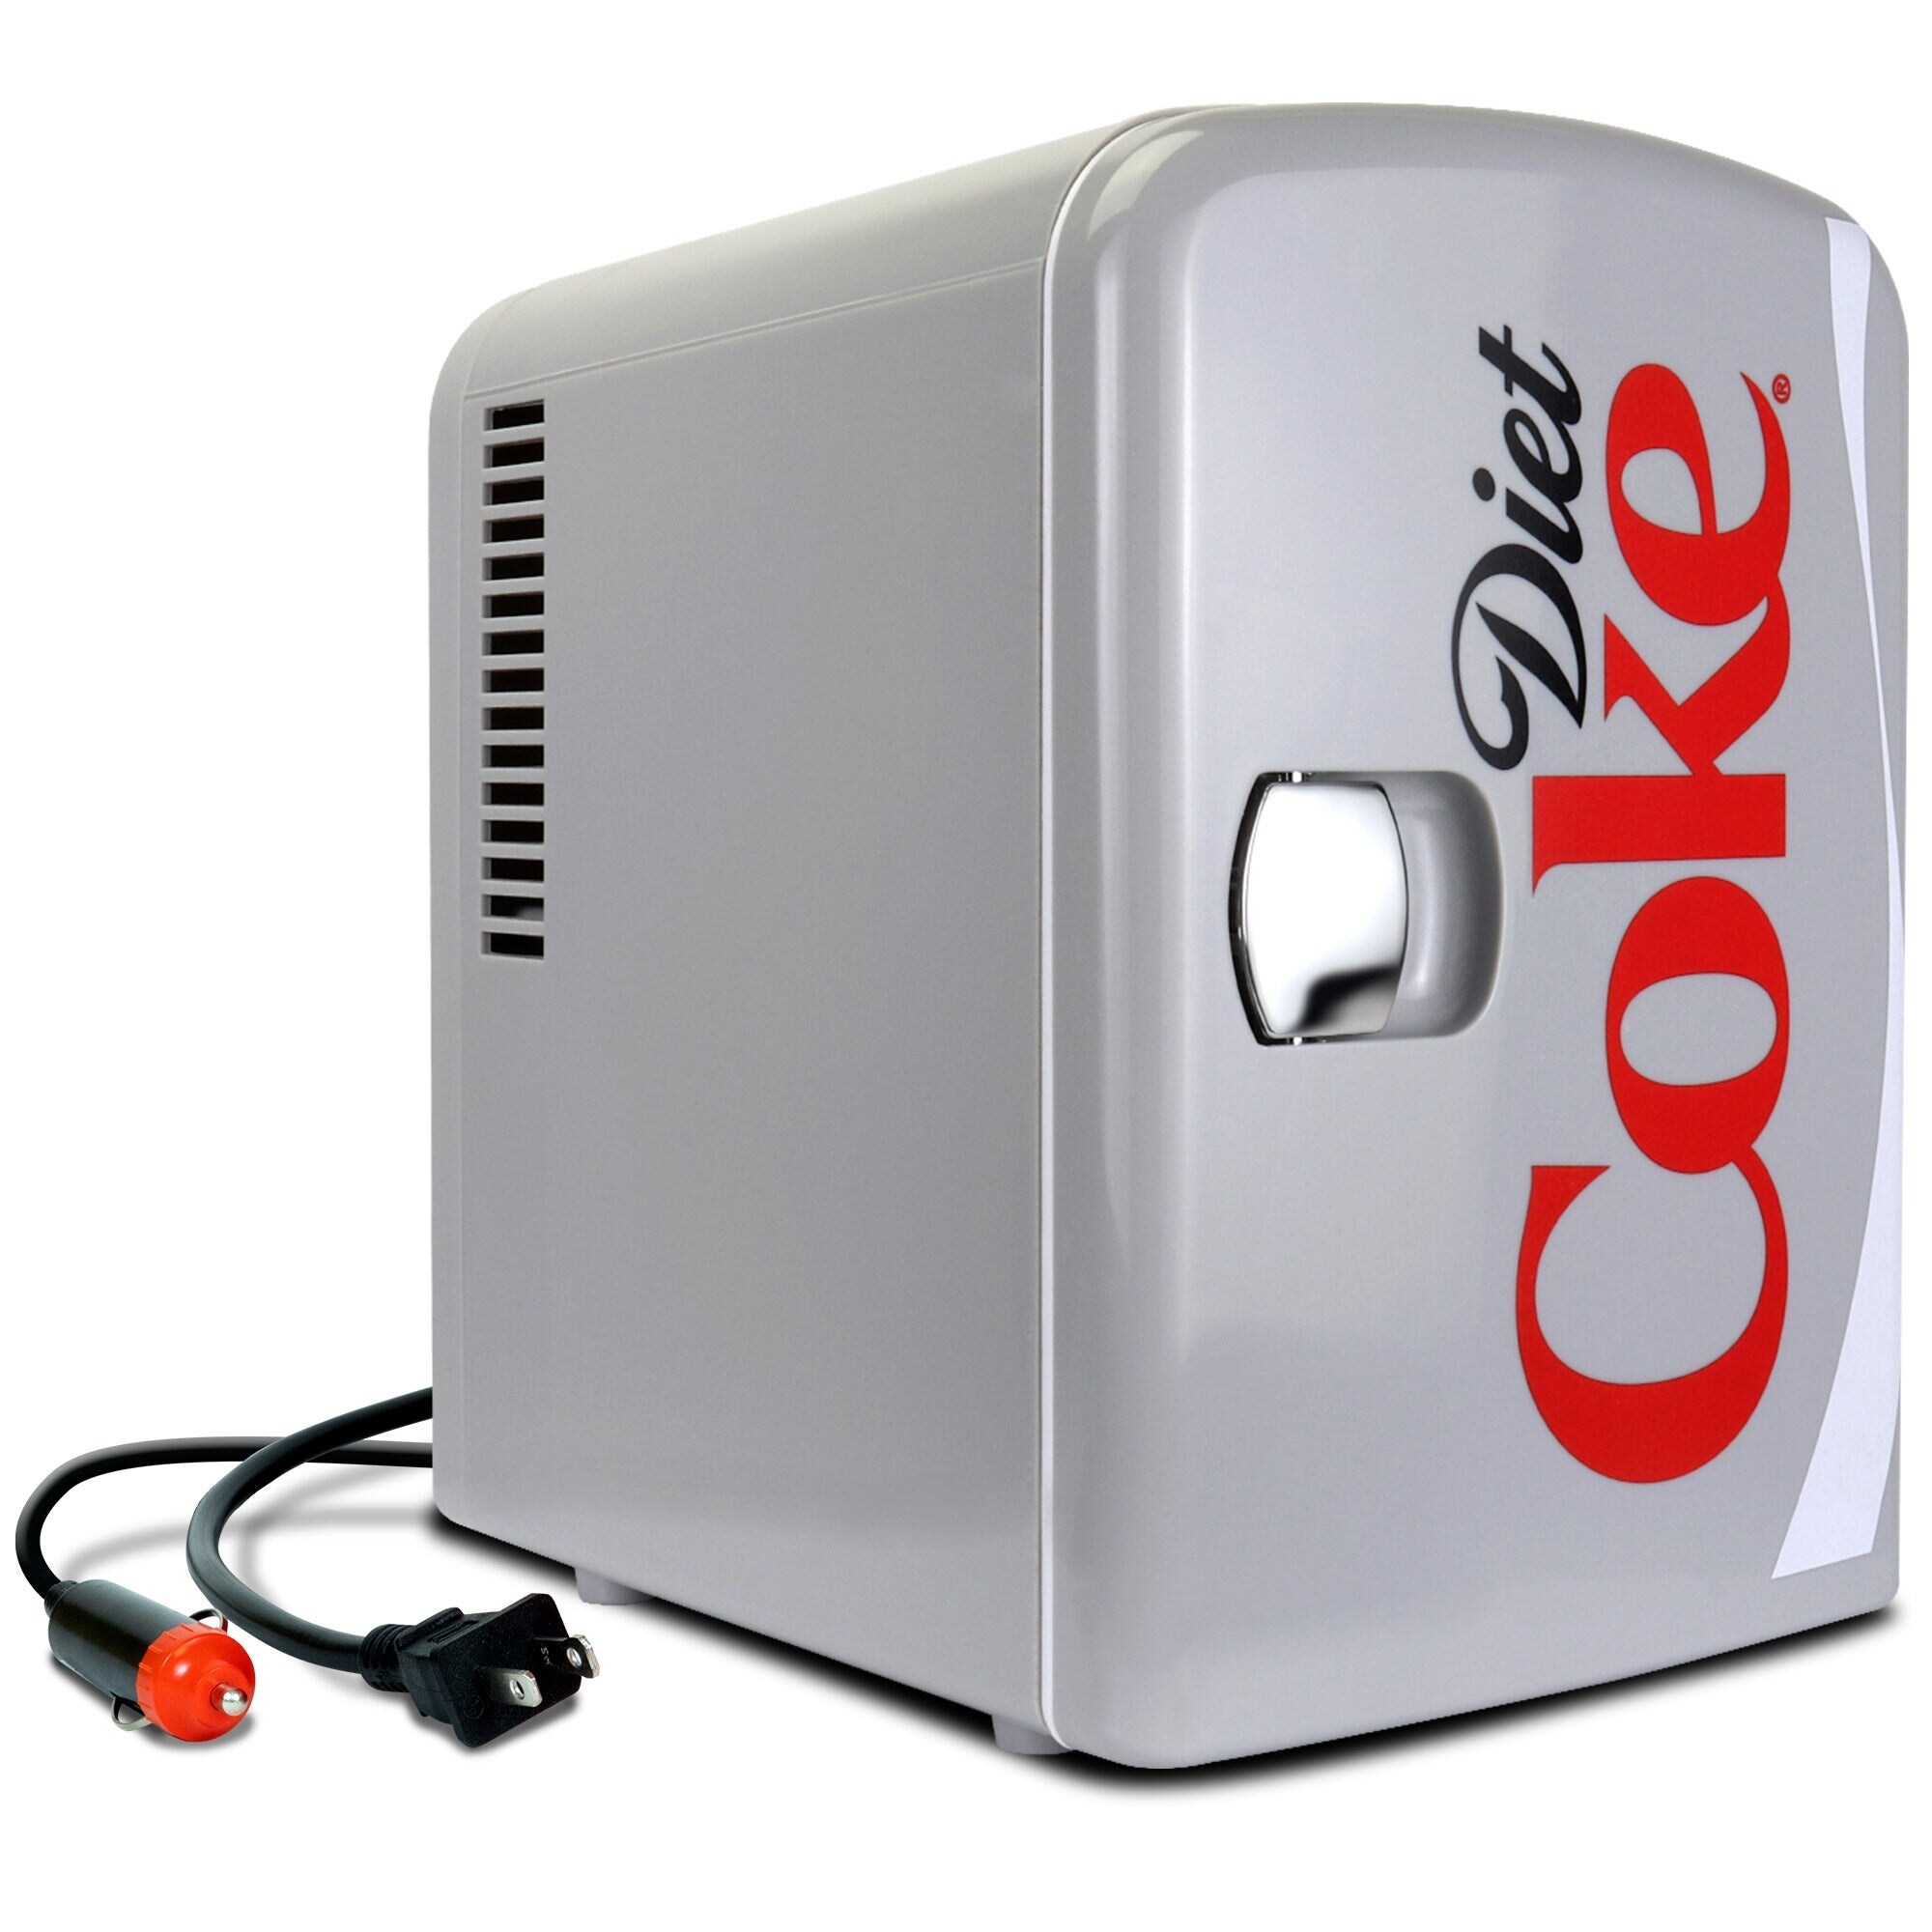 Caynel 5L Portable Retro Mini Fridge 6-can Mini Refrigerator